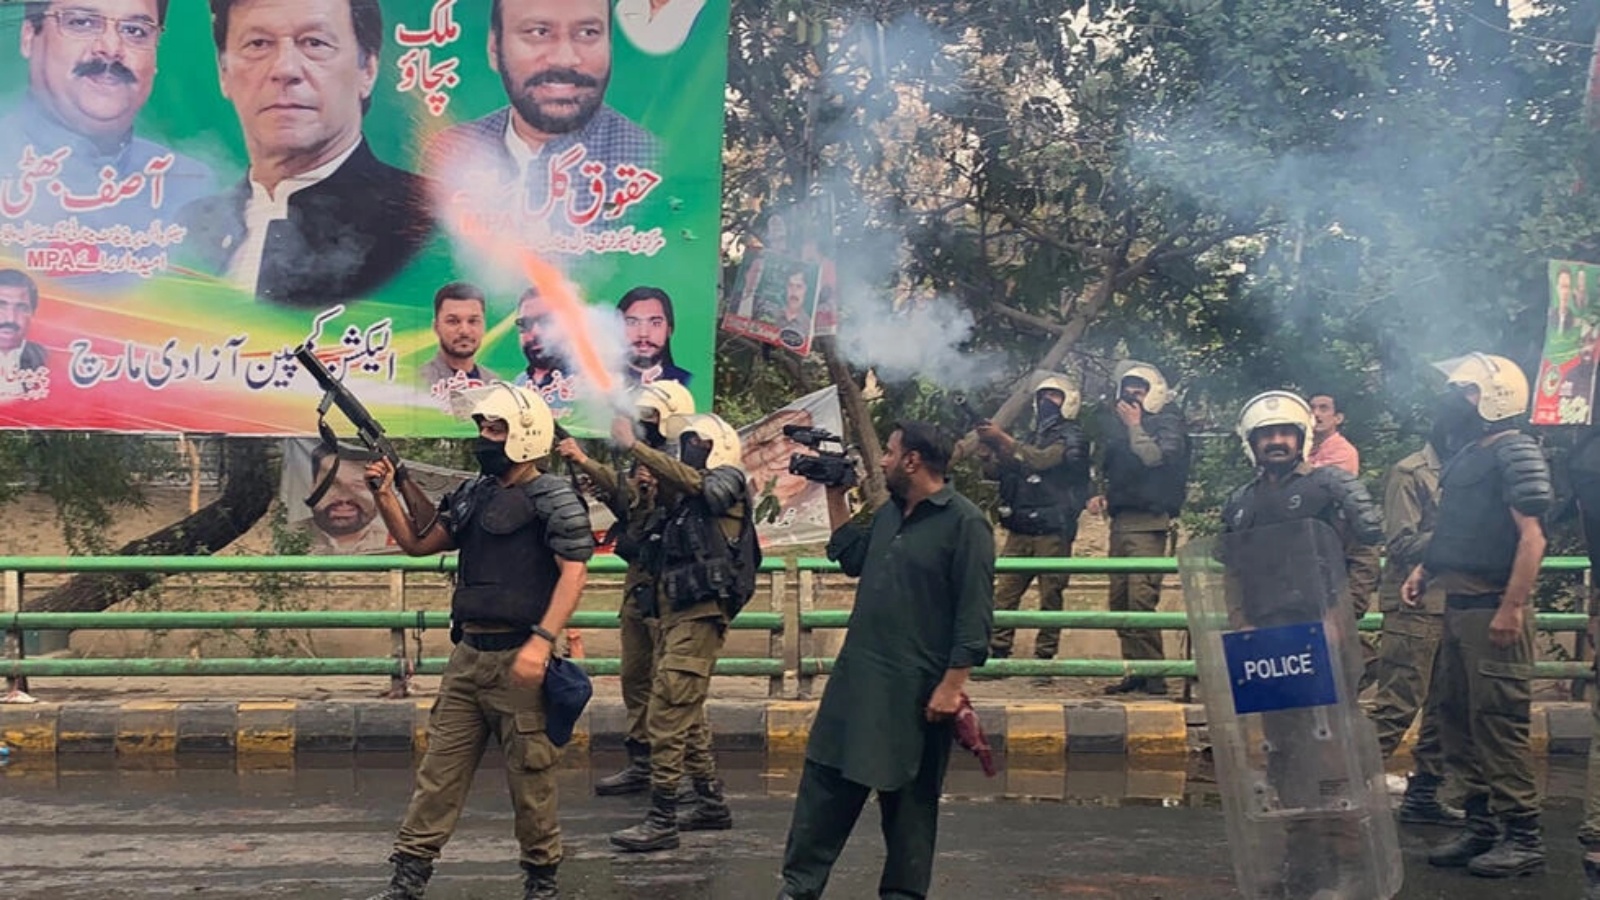 شرطة مكافحة الشغب تطلق قذائف الغاز المسيل للدموع لصد أنصار رئيس الوزراء السابق عمران خان تجمعوا خارج منزله لمنع اعتقاله